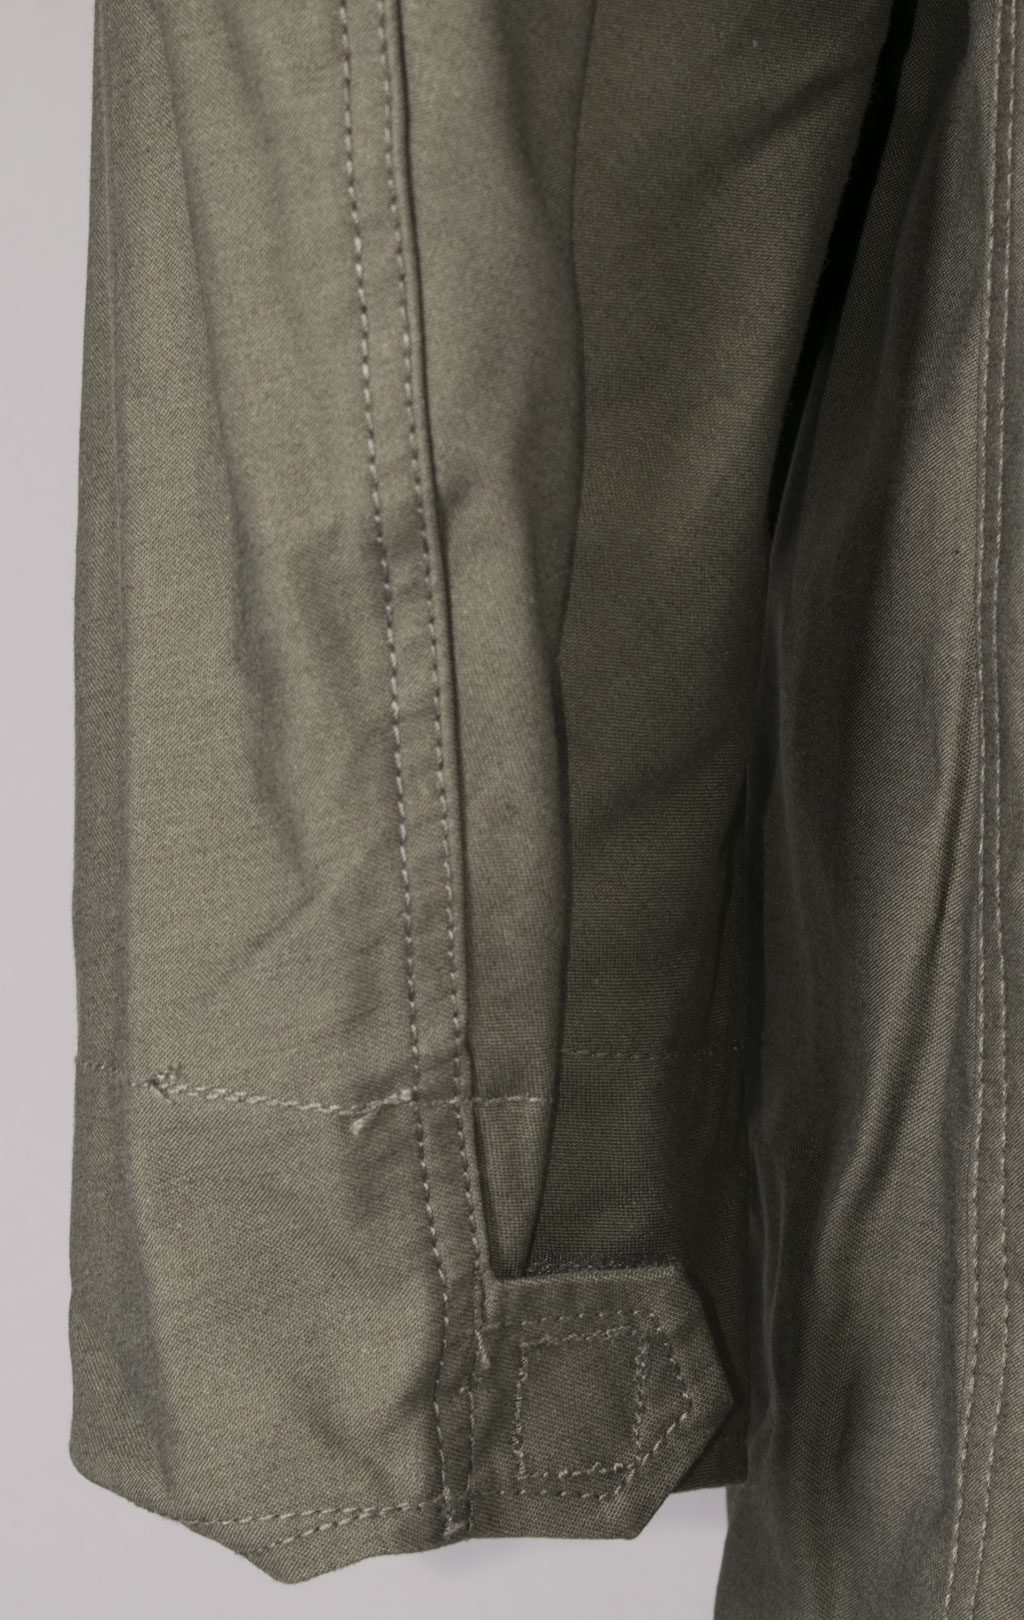 Куртка ALPHA INDUSTRIES CLASSIC M-65 FW 23/24 m olive 